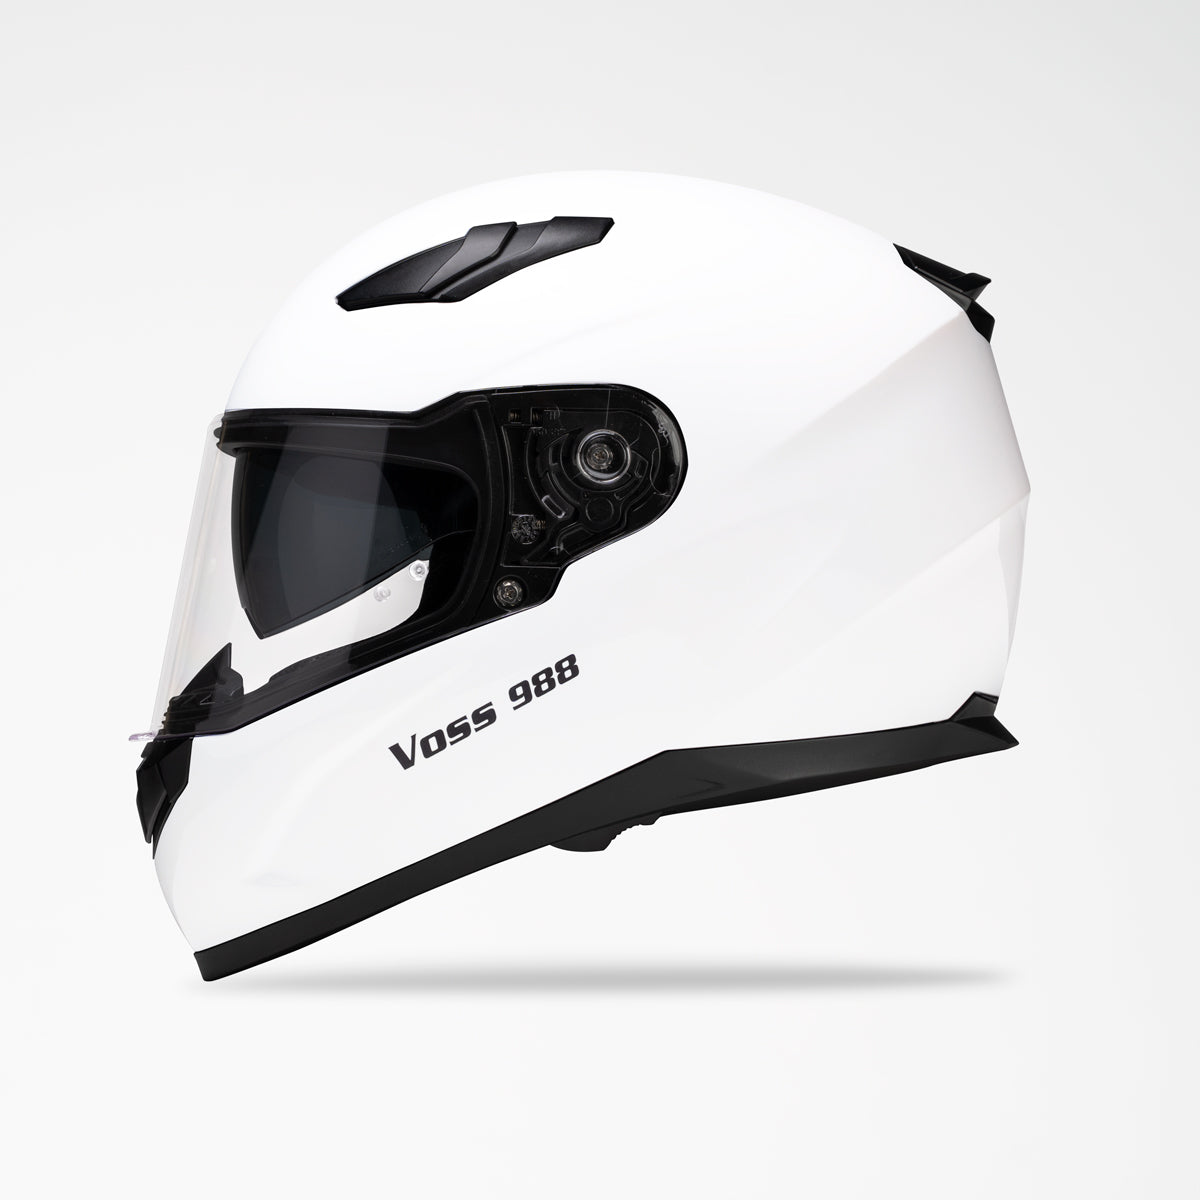 VOSS 988 MOTO-1 WHITE HELMET - Voss Helmets